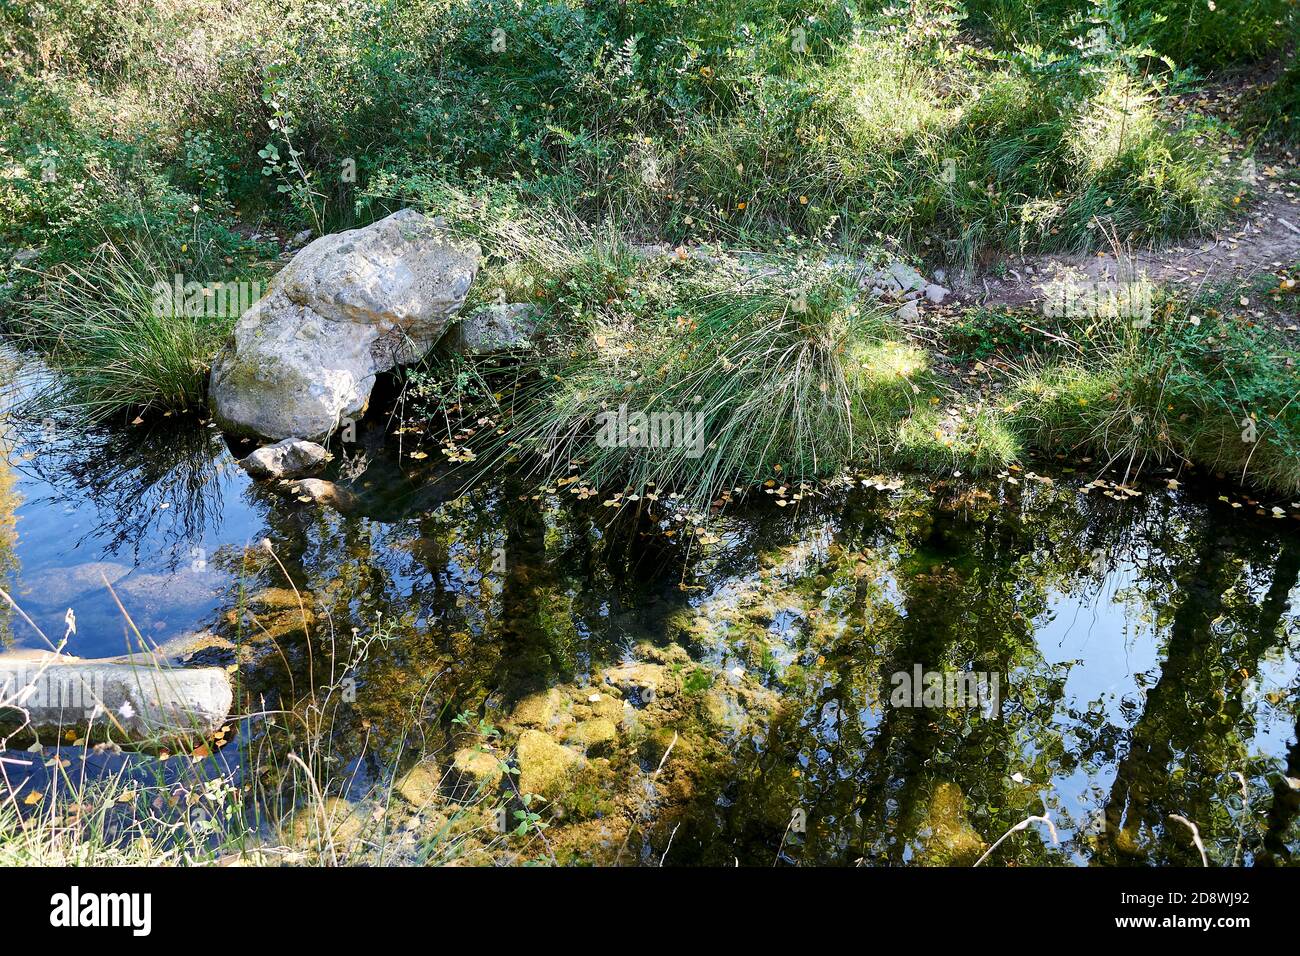 Réflexions de végétation dans la rivière de montagne, jour lumineux, vert, lumière, tranquillité Banque D'Images